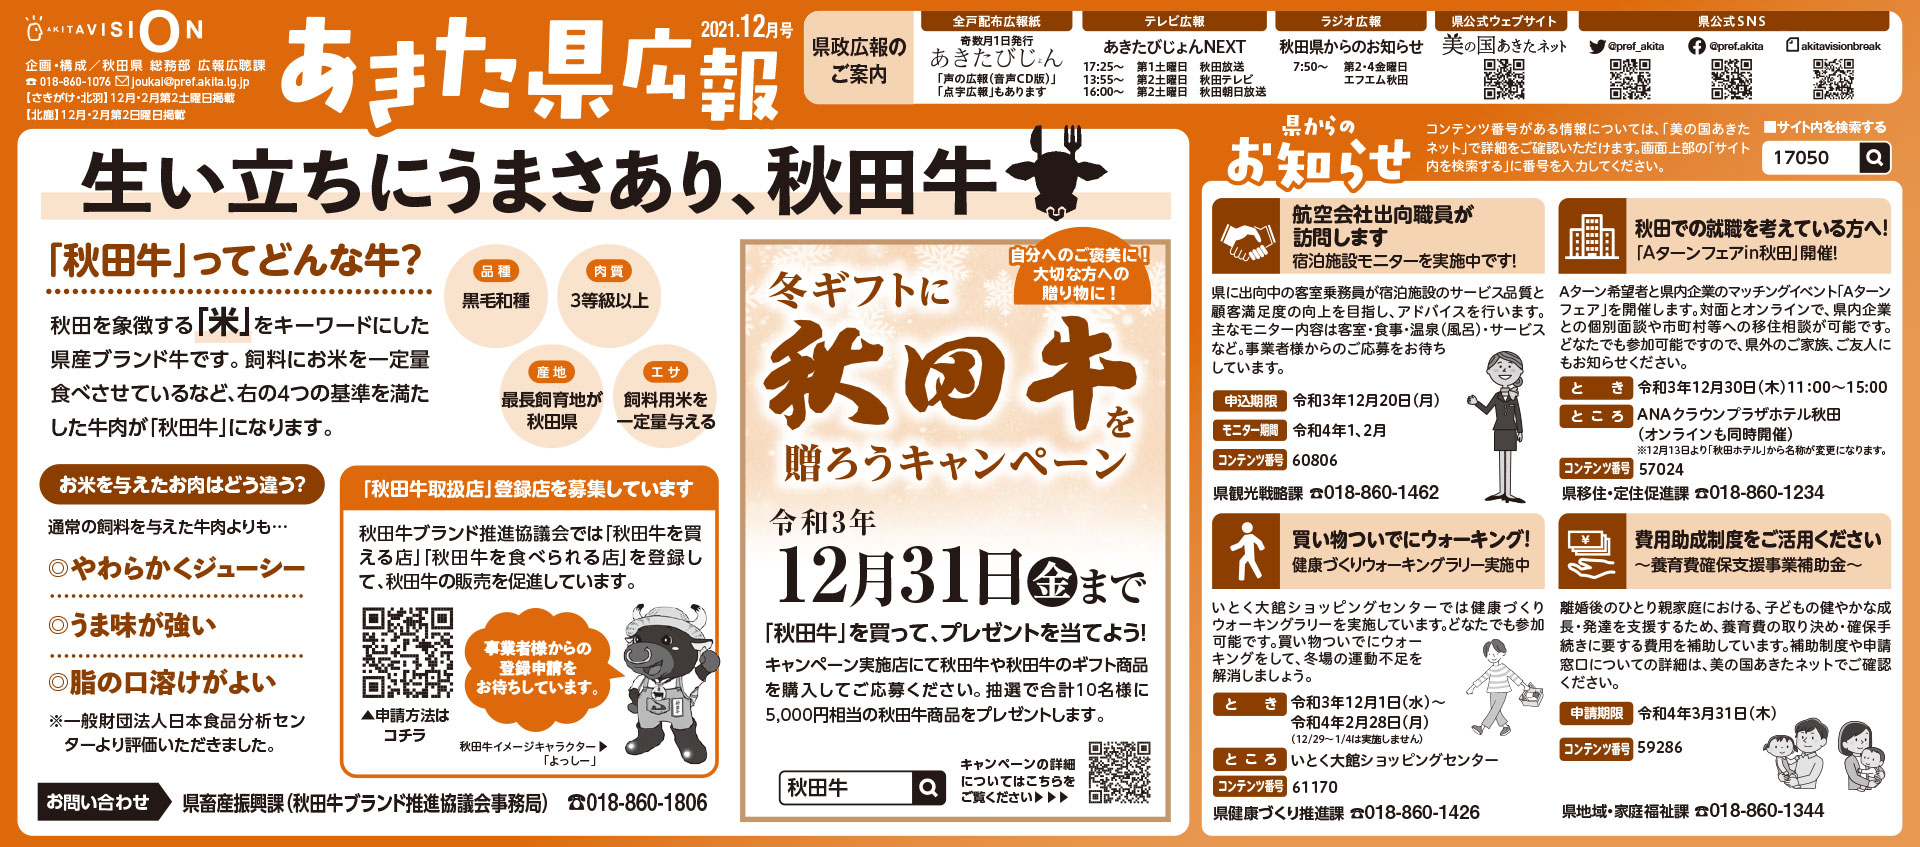 令和3年12月-秋田県新聞広報-あきた県広報